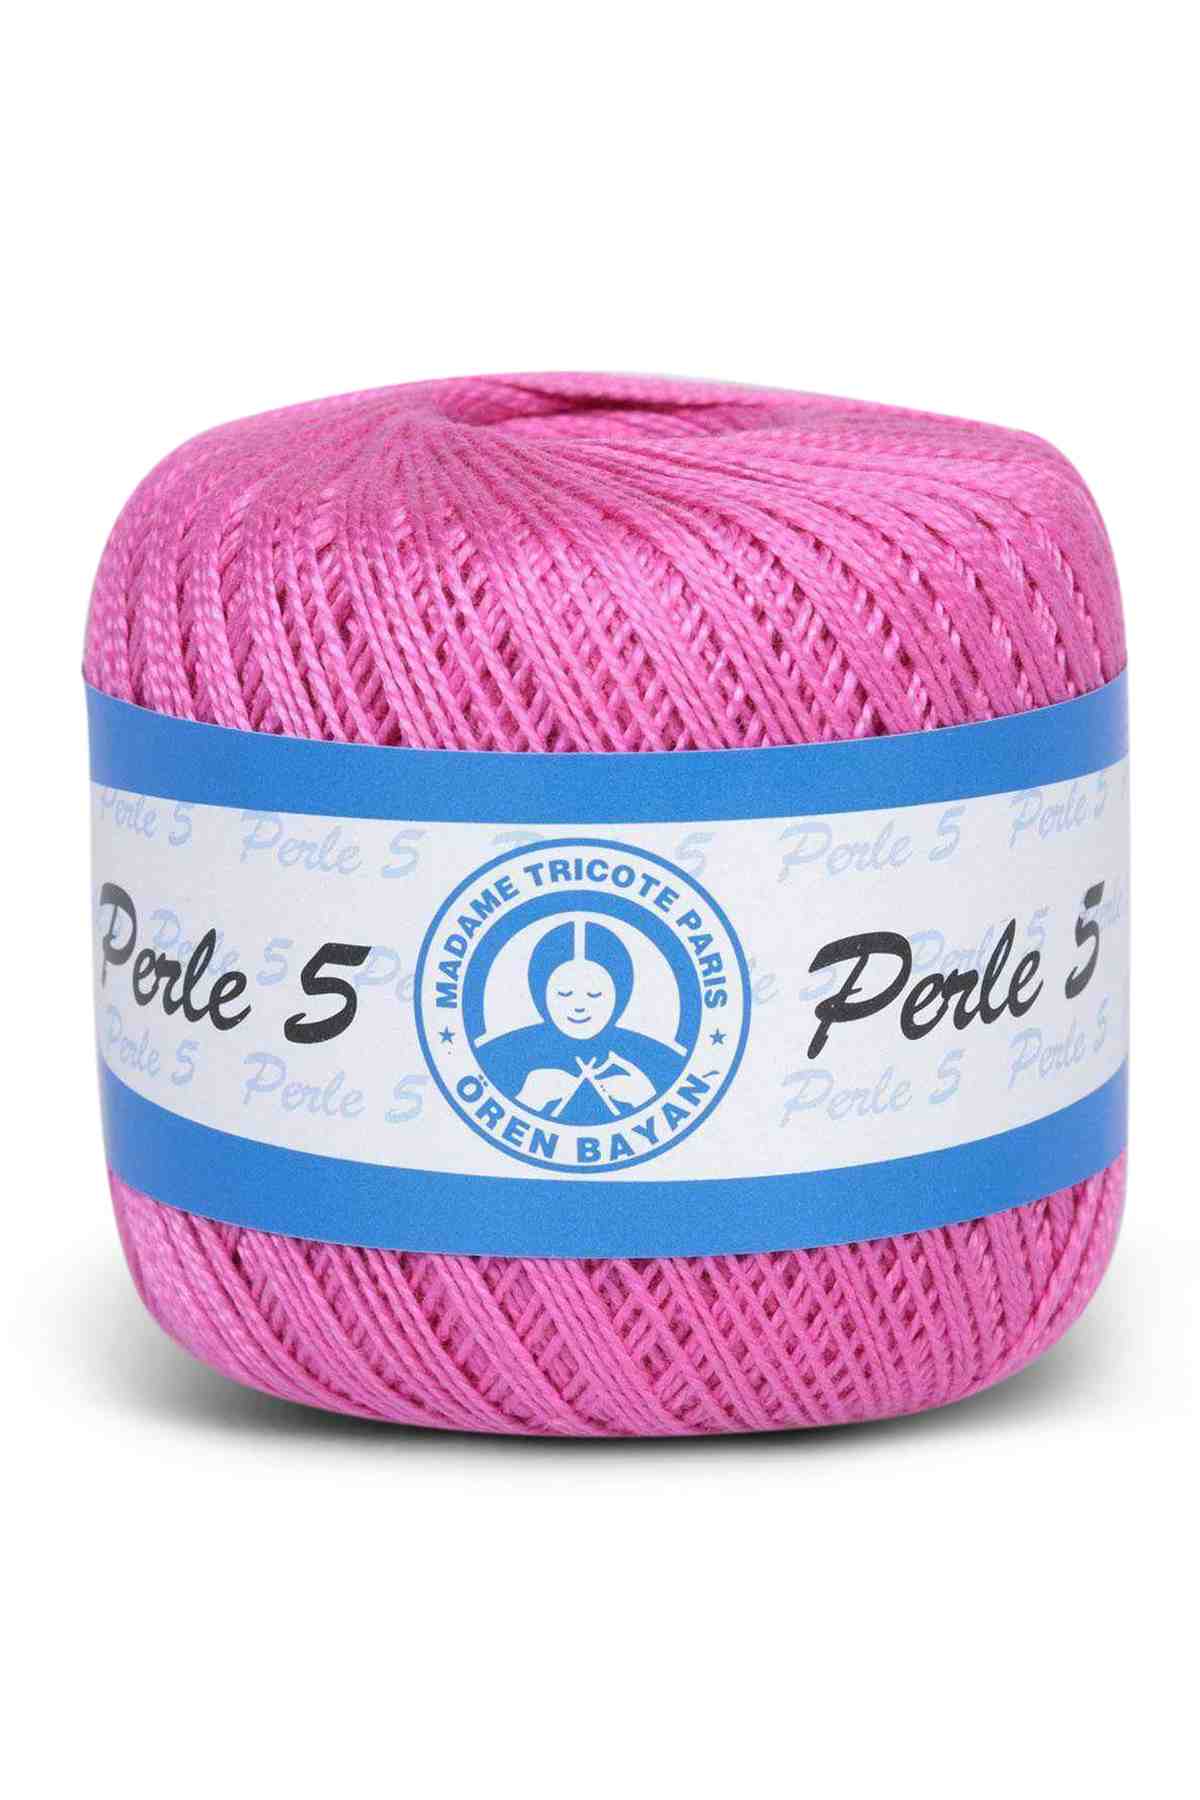 La Vita Polyester Embroidery Thread